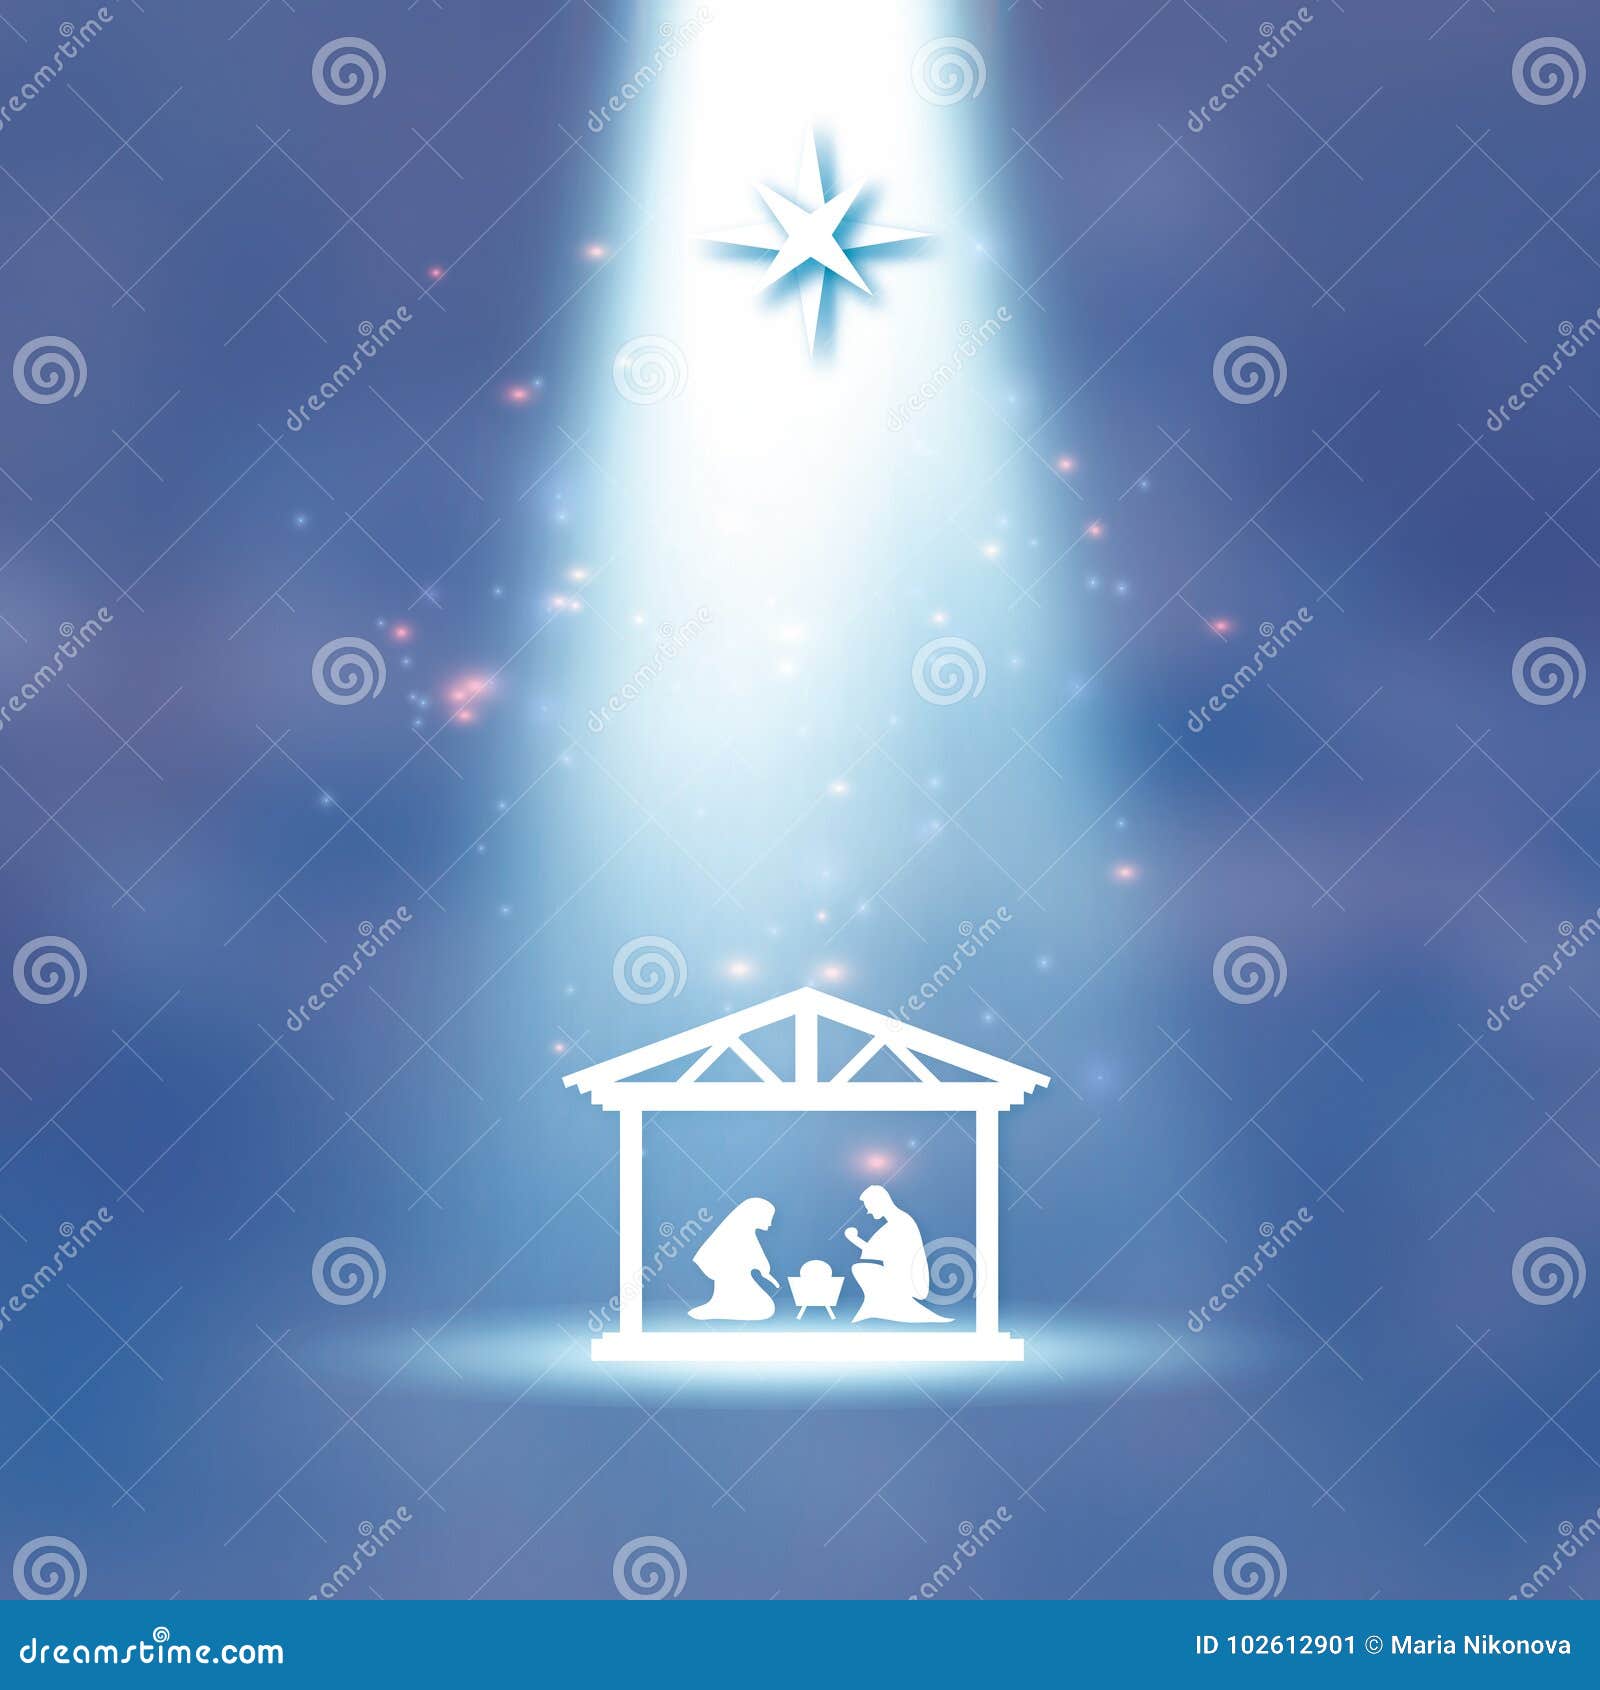 Vruchtbaar nakomelingen optocht Birth of Christ. Baby Jesus in the Manger. Holy Family. Magi. S Star of  Bethlehem - East Comet. Nativity Christmas Stock Vector - Illustration of  cave, barn: 102612901